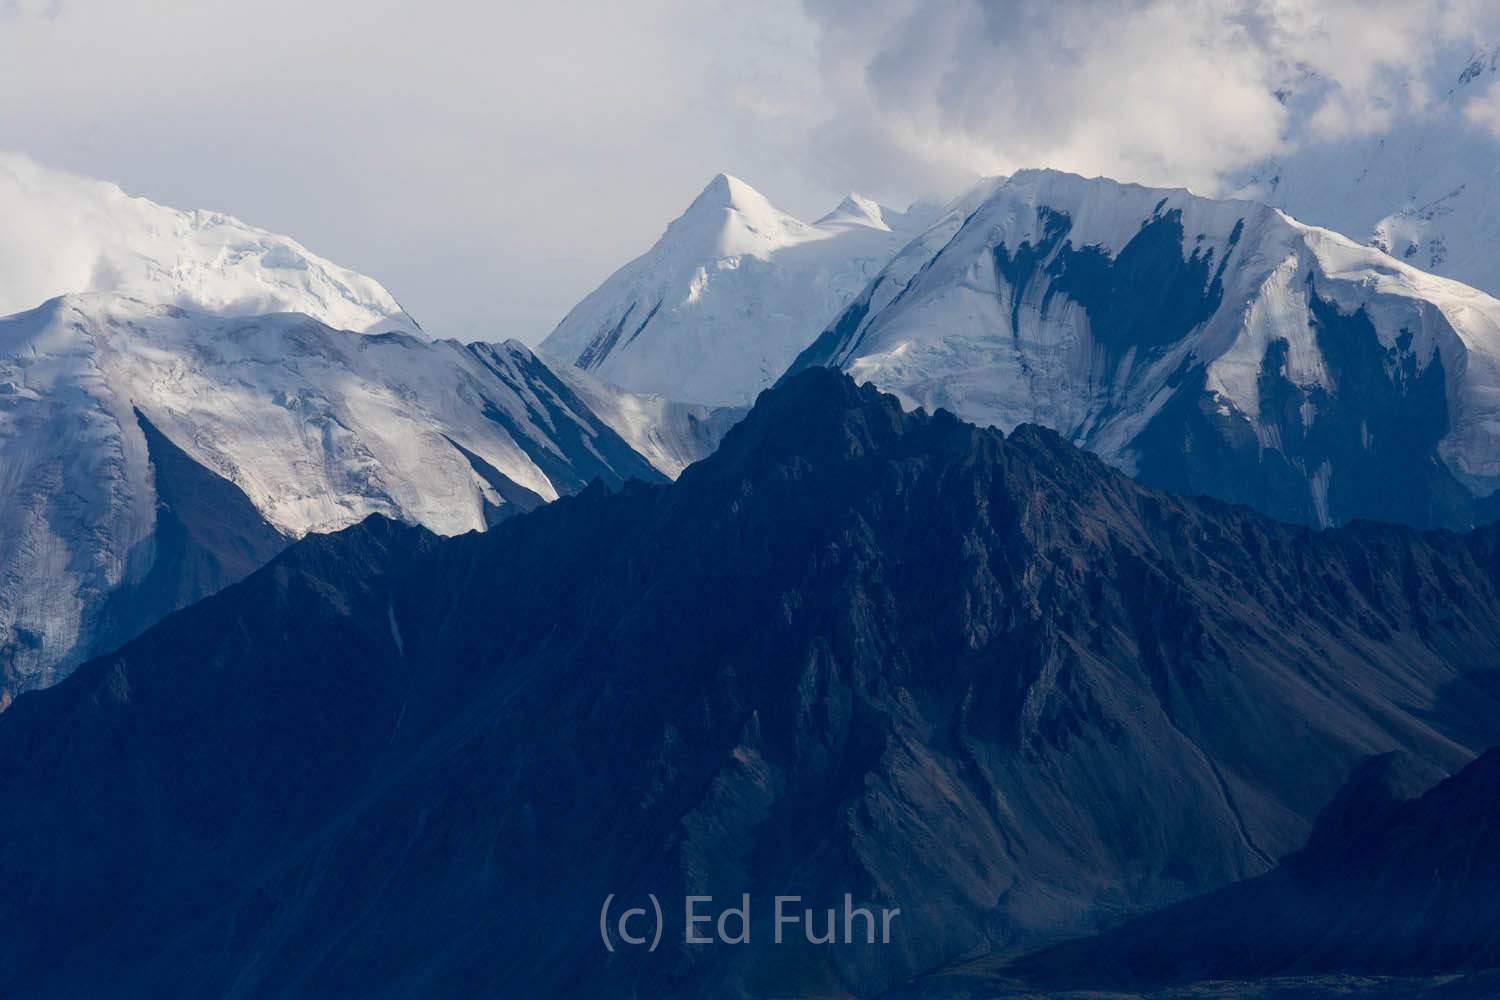 The peaks of Denali appear like winter even in early August.